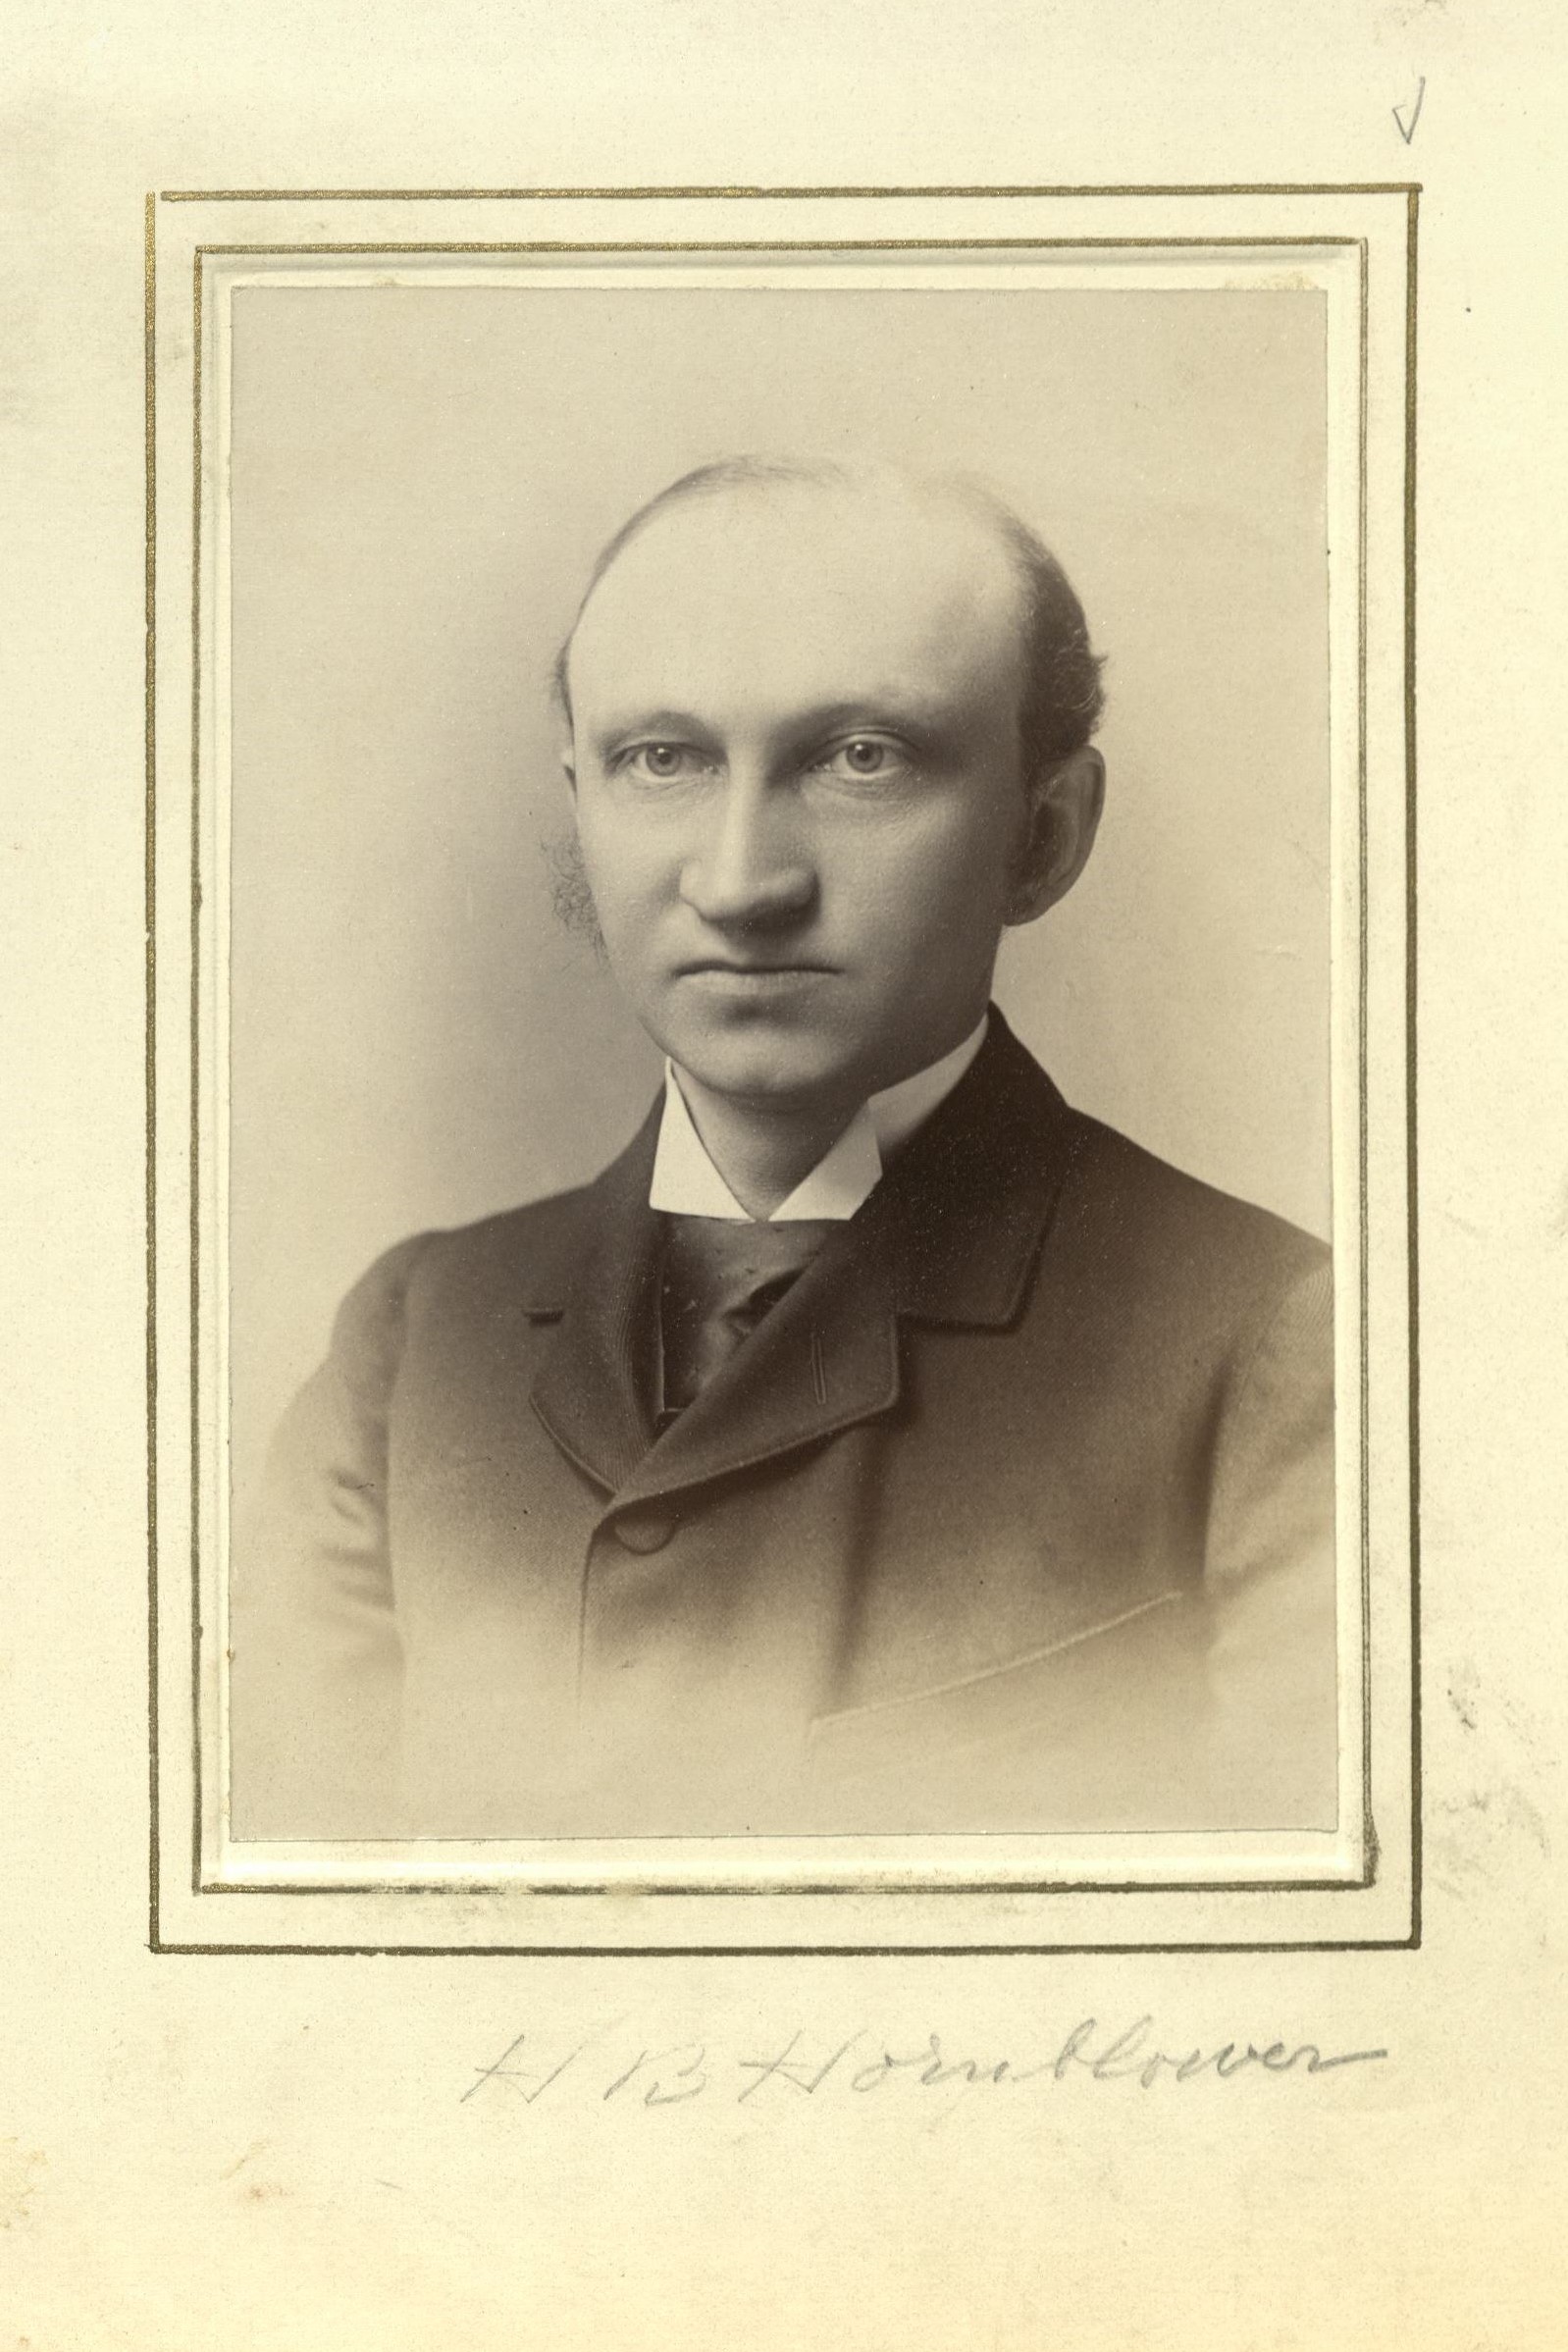 Member portrait of William B. Hornblower